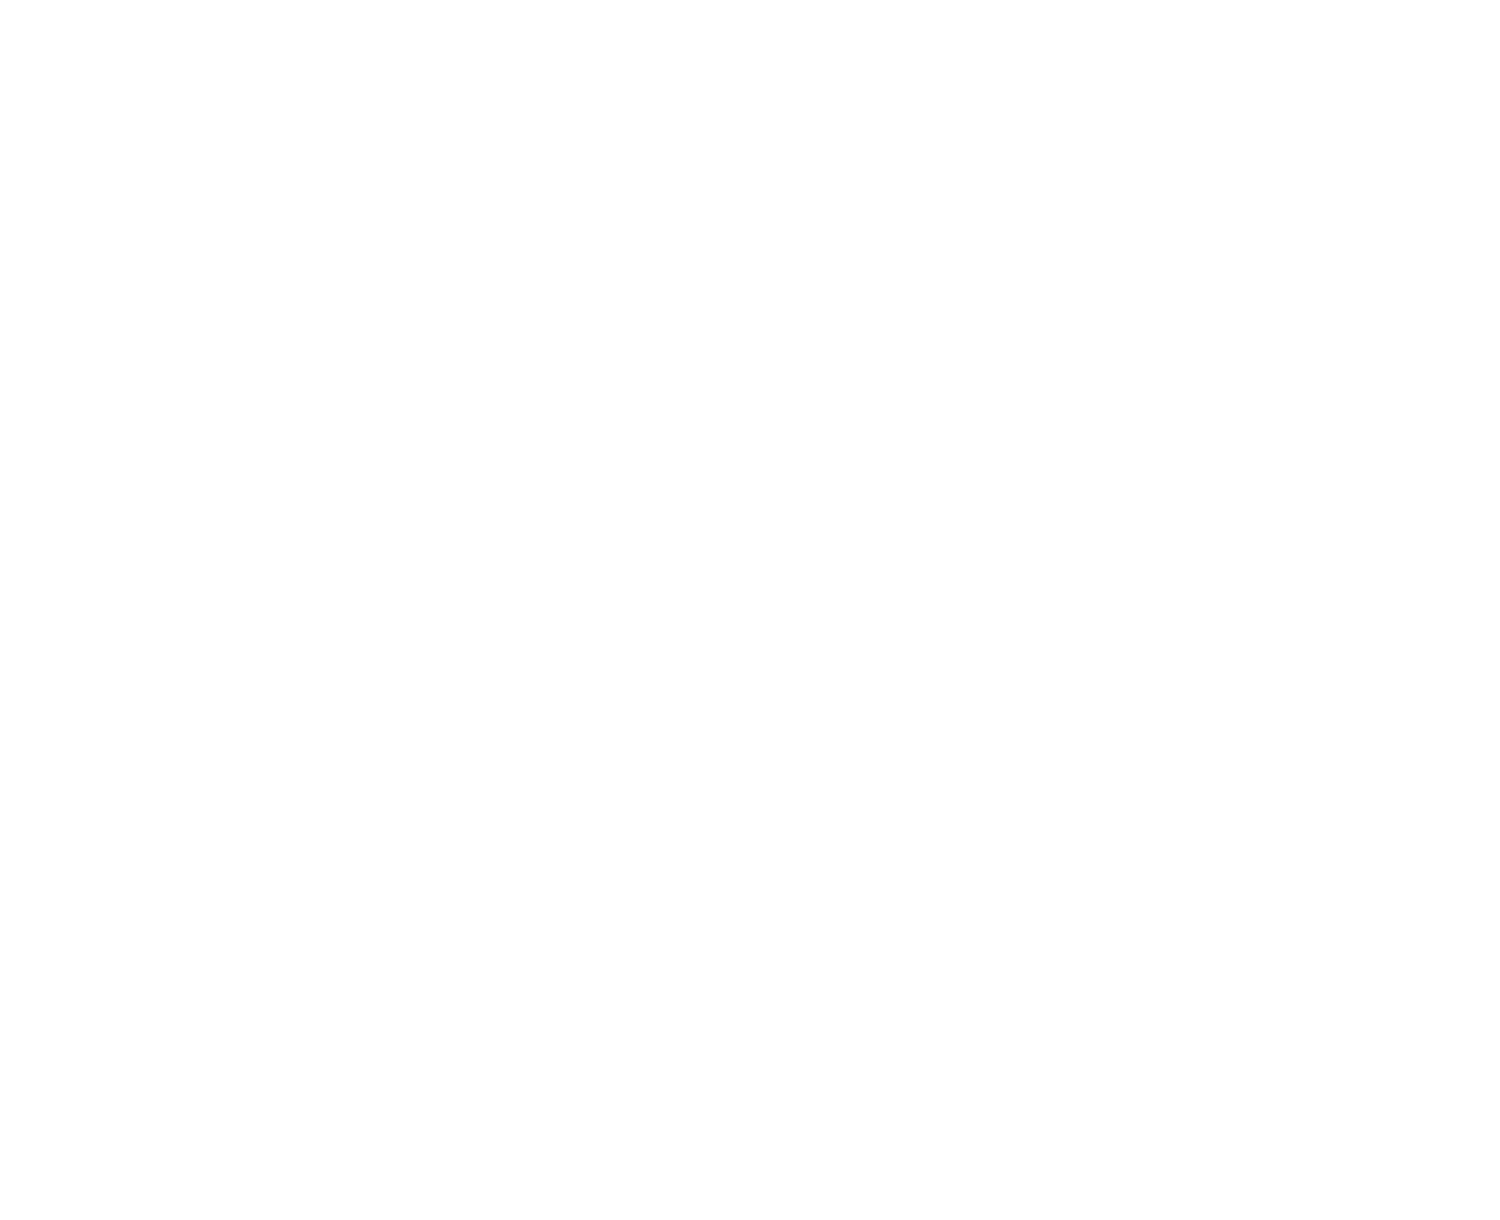 DCU Student Life